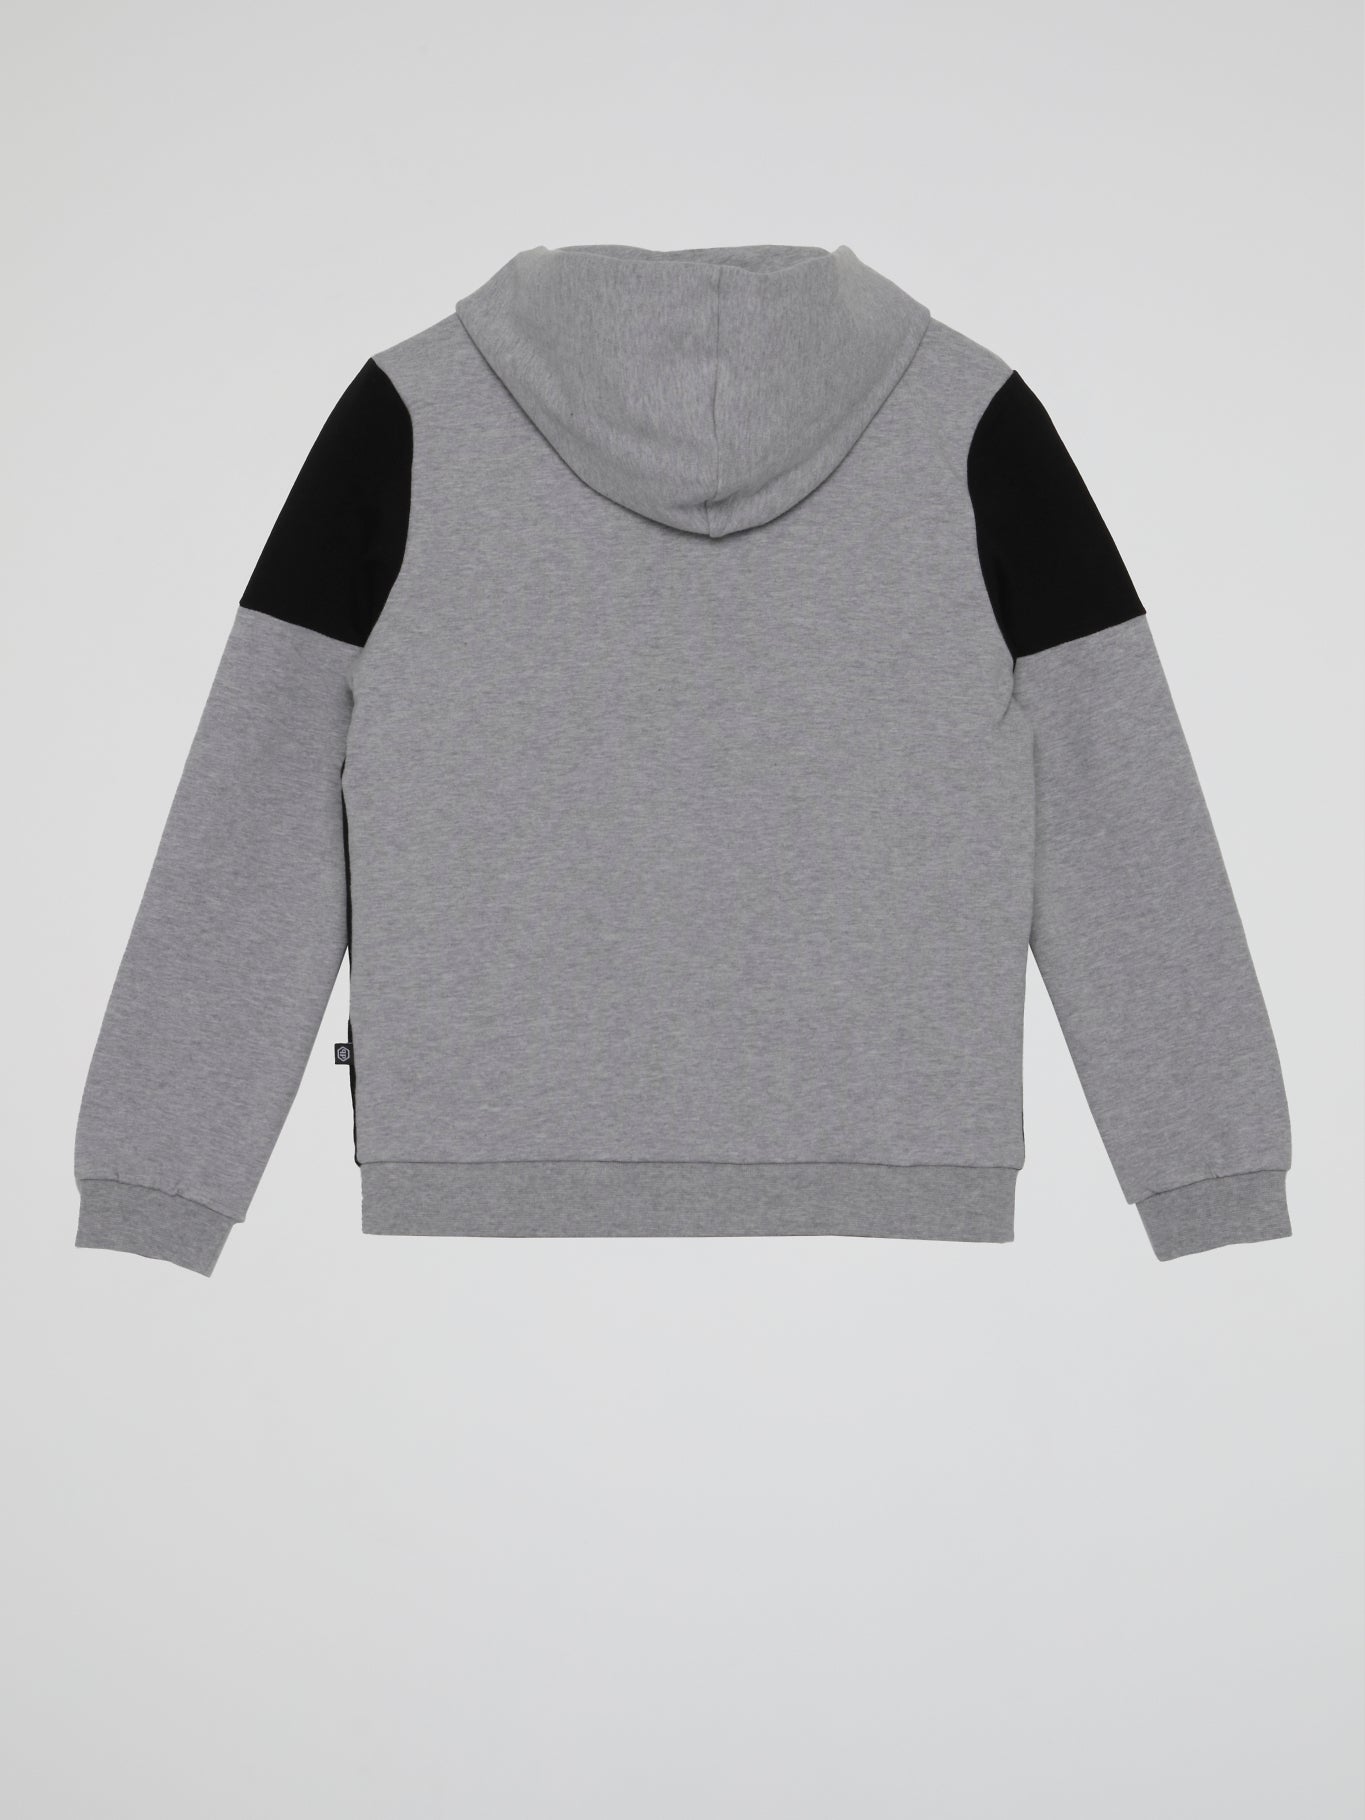 Grey Patched Hoodie Sweatshirt (Kids)